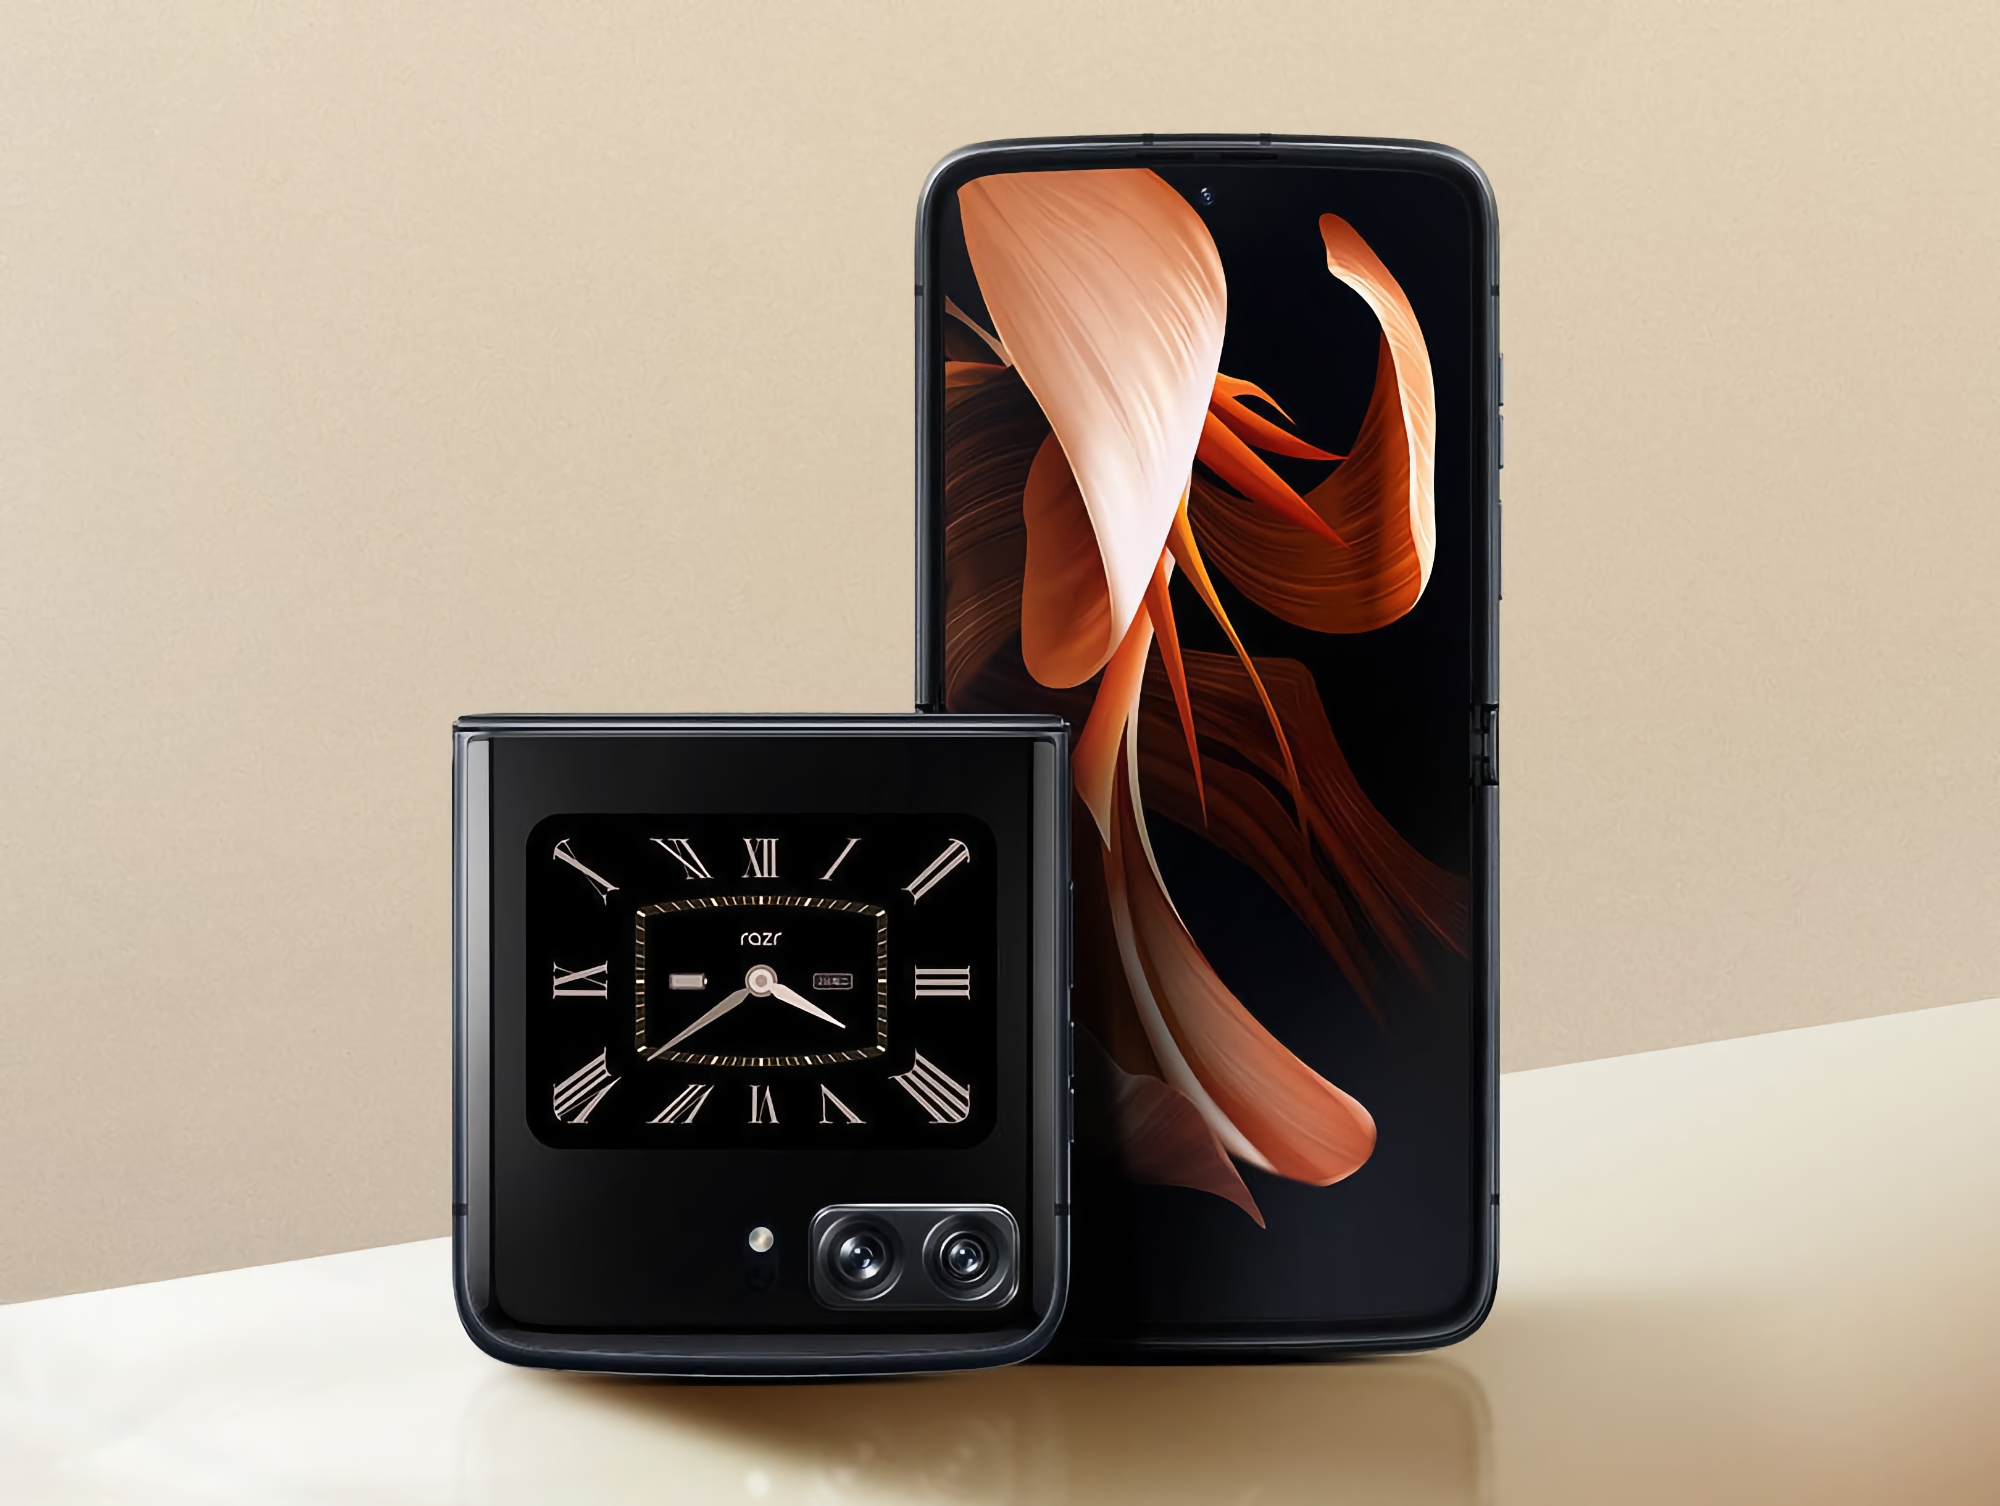 Rival del Galaxy Flip 4: Motorola presenta el Moto RAZR 2022 clamshell con pantalla de 144Hz, chip Snapdragon 8+ Gen 1 y cámara de 50MP